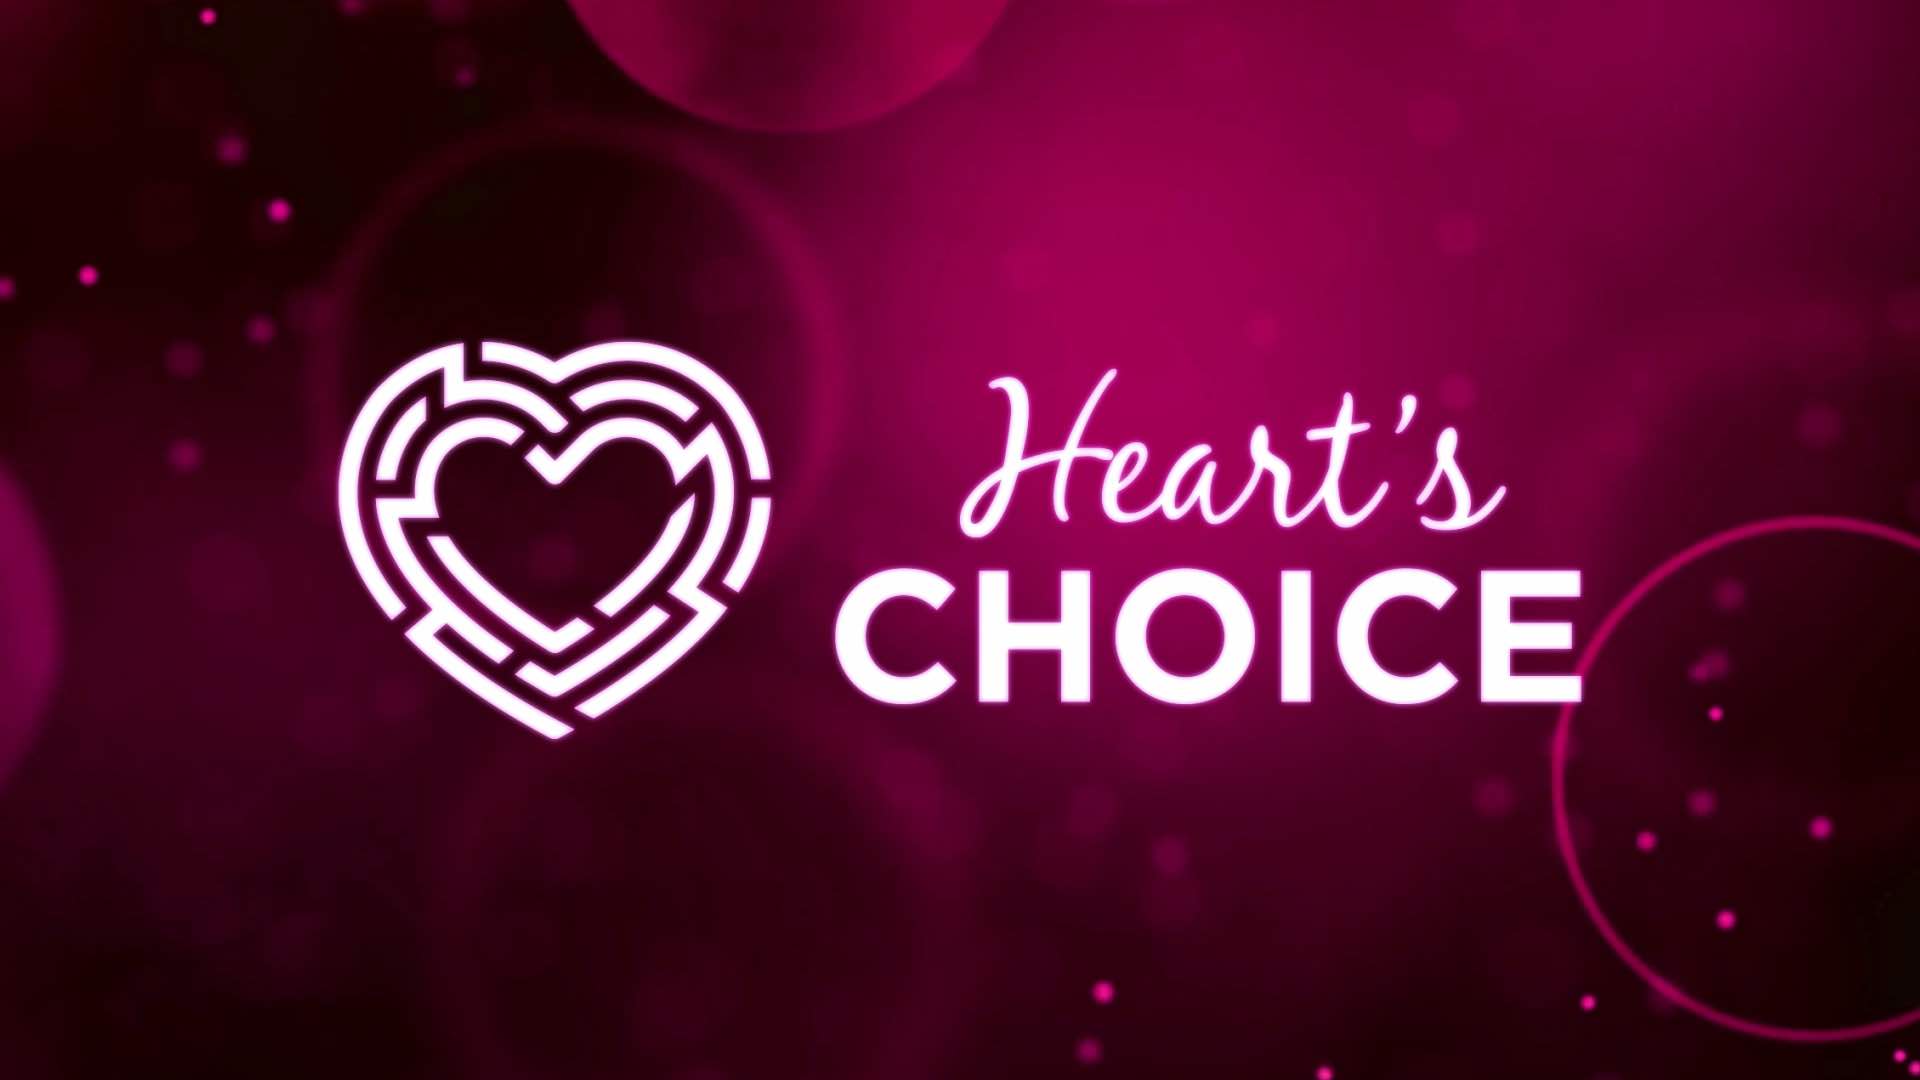 Heart's Choice